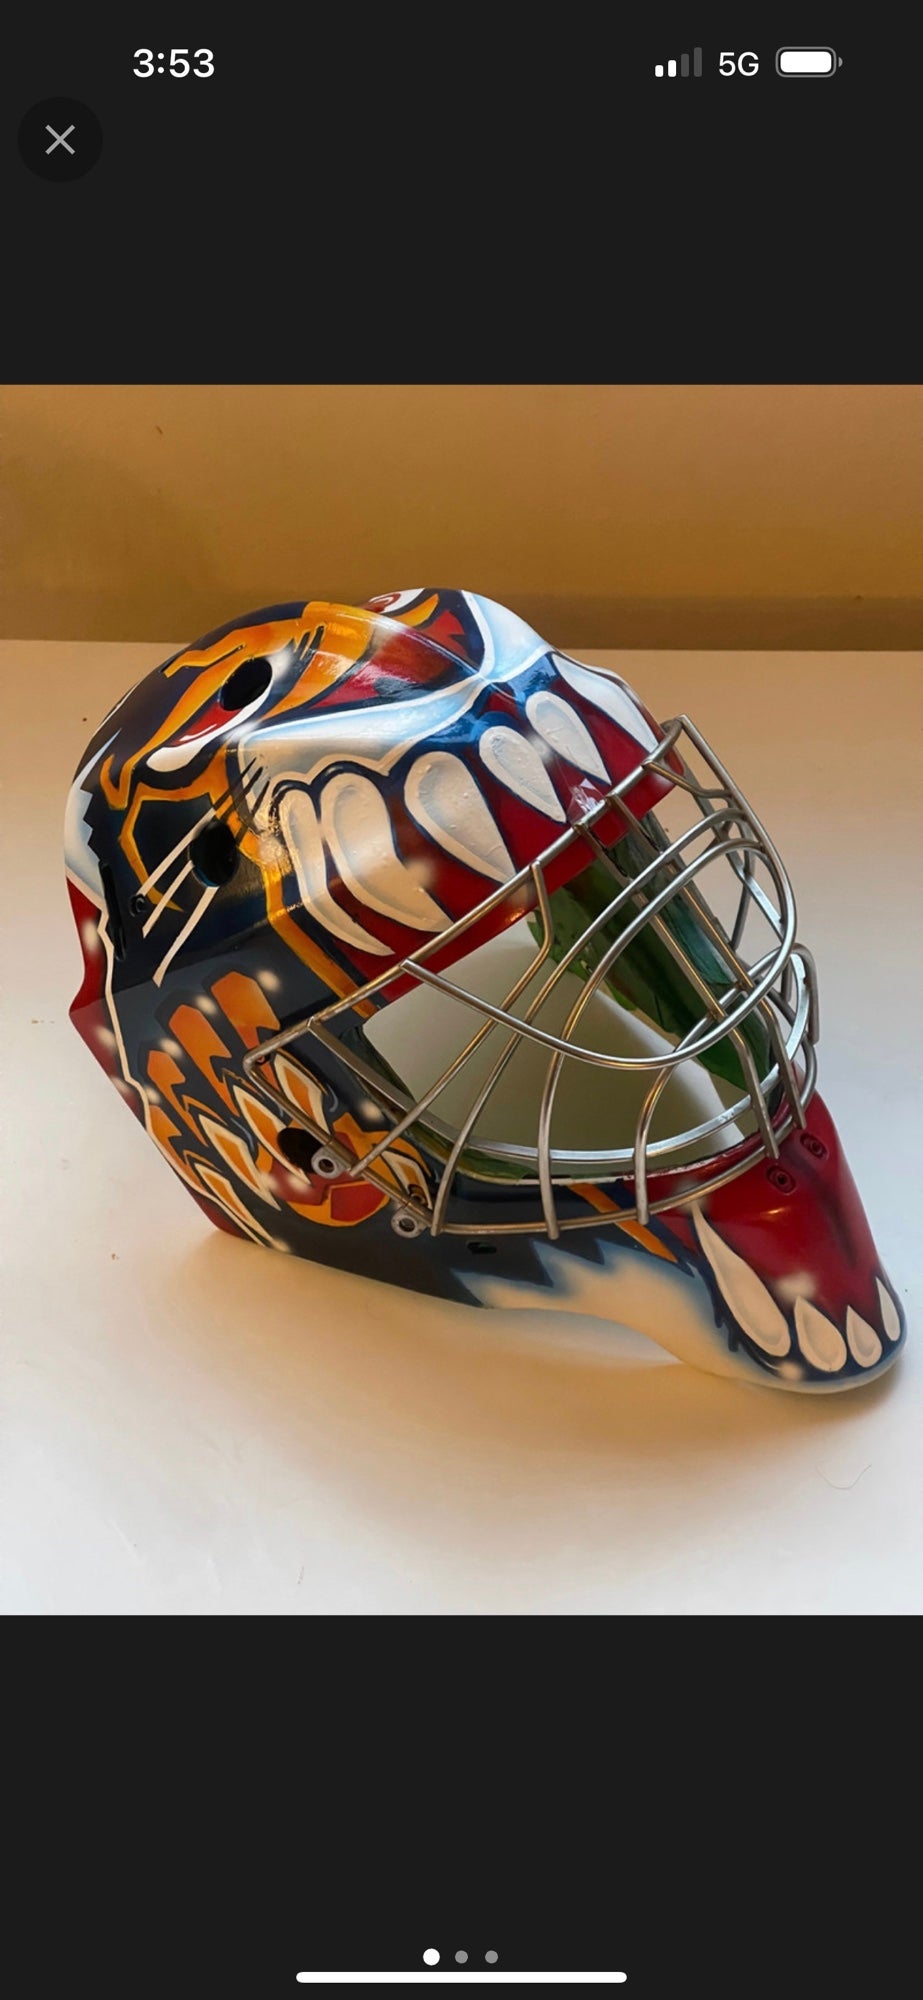 Mvp Airbrush - Custom Painted Helmets, Custom Goalie Helmet